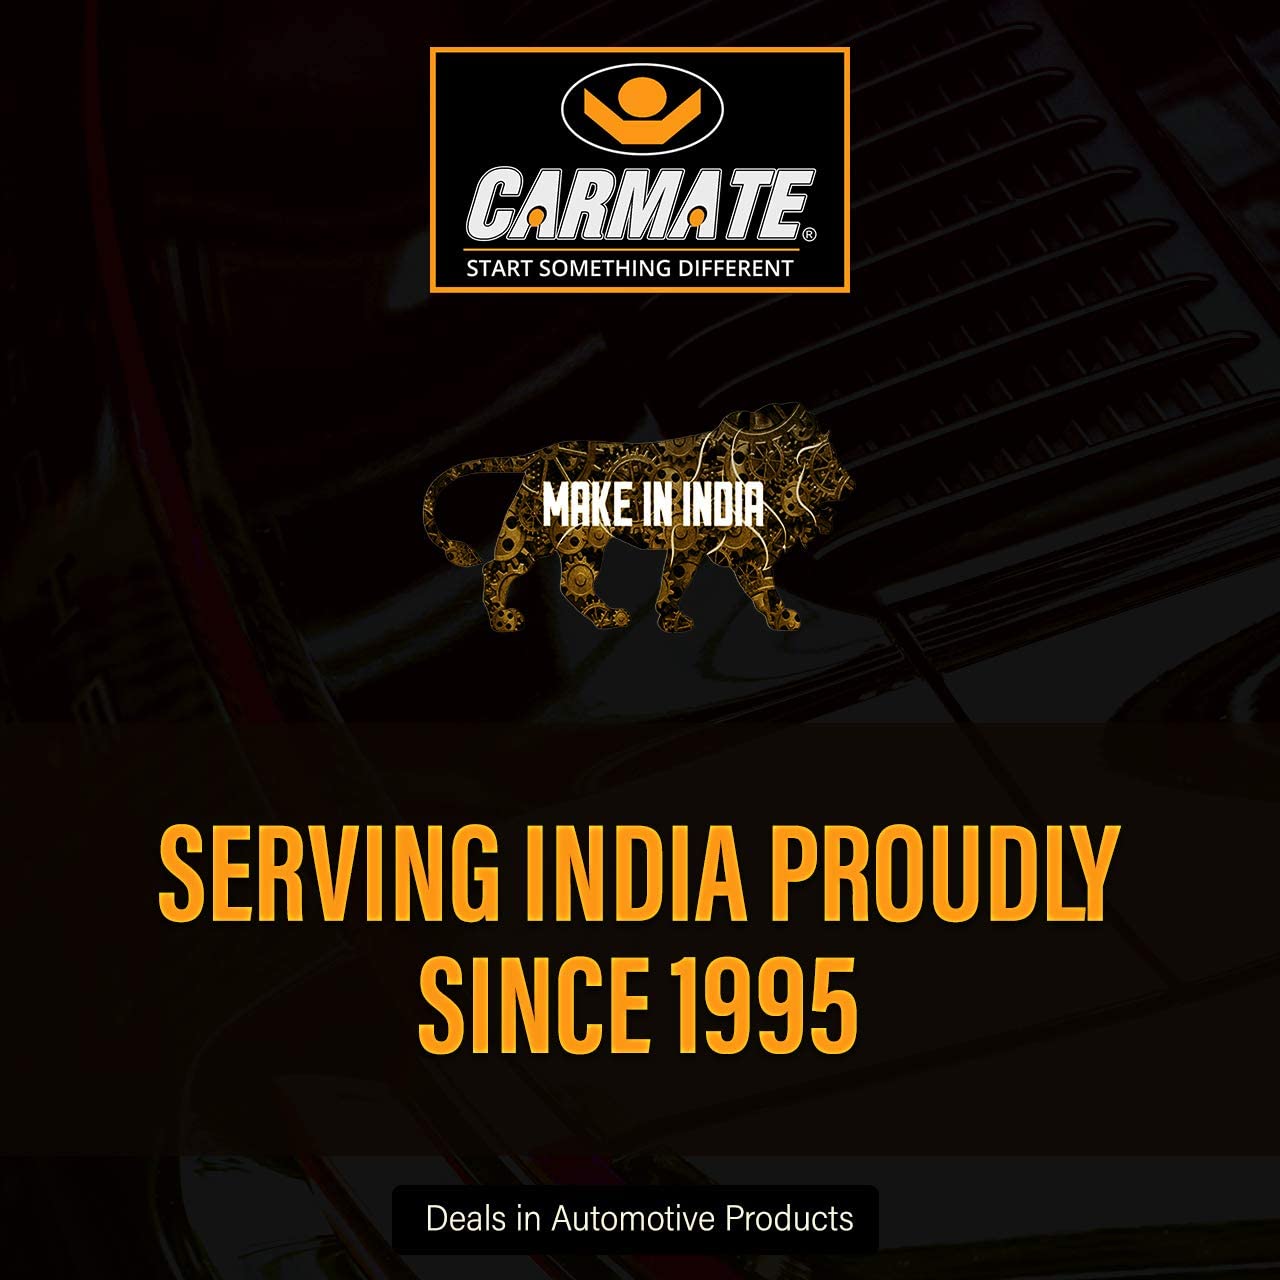 Carmate ECO Car Body Cover (Grey) for Tata - Sumo Victa - CARMATE®